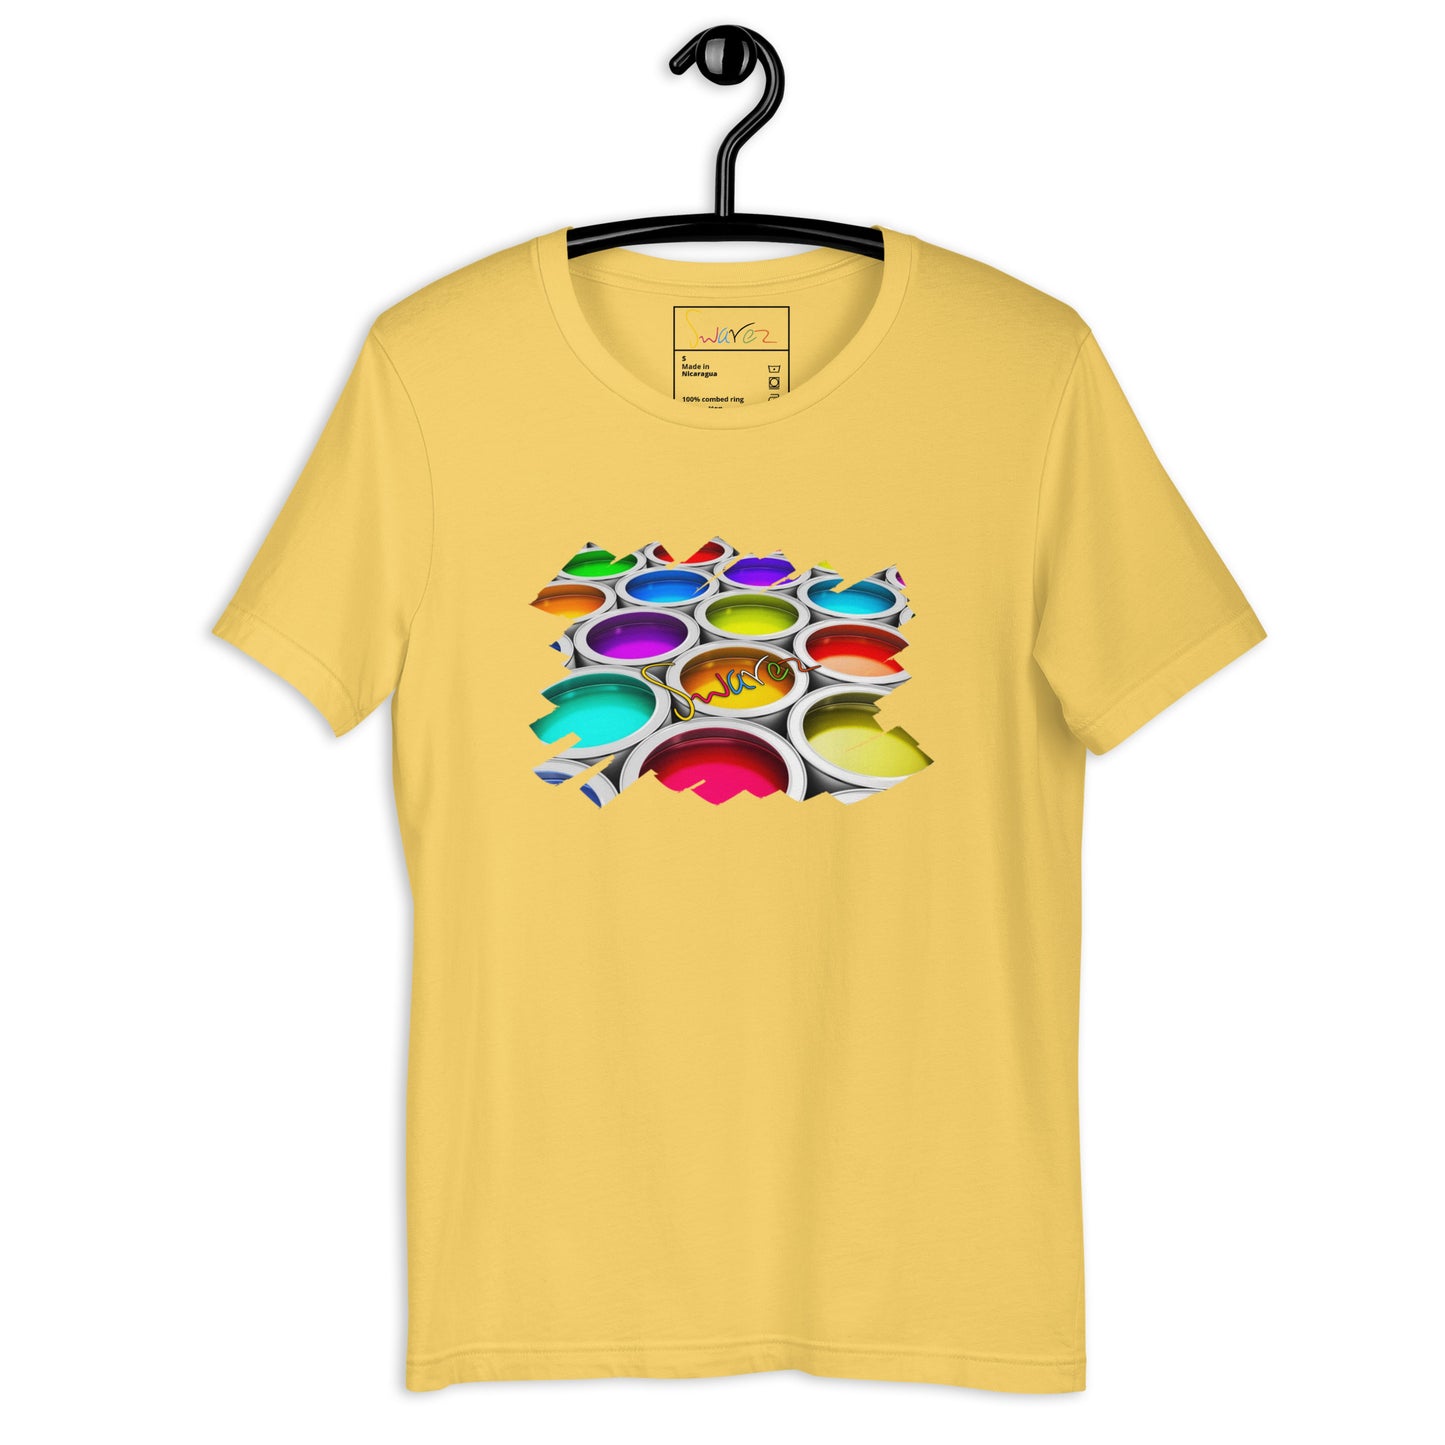 Unisex t-shirt - Colorful paint cans